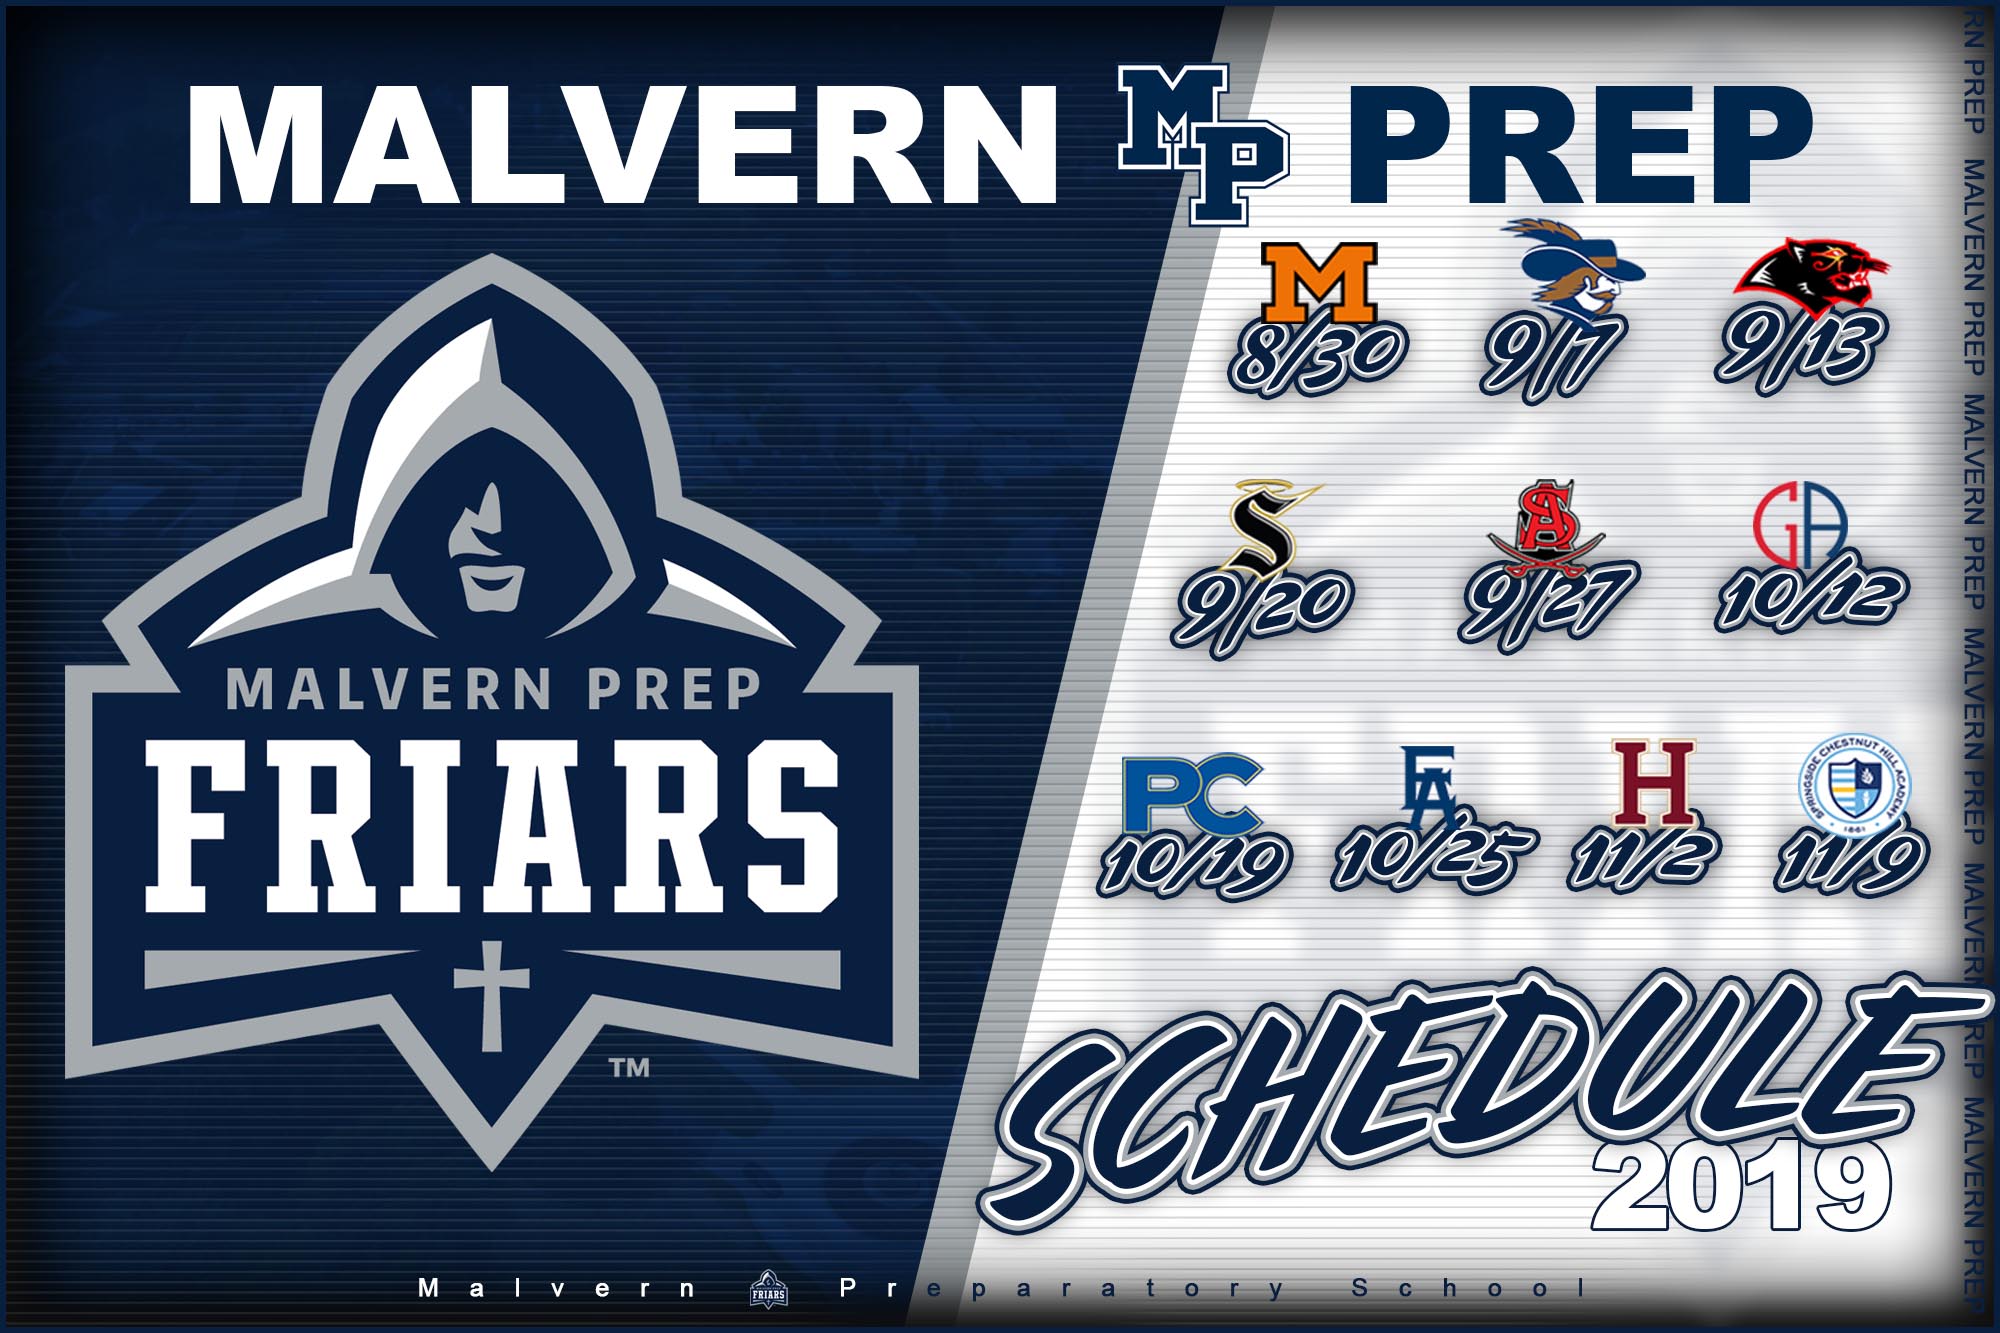 Malvern Prep Friars Football Schedule 2019